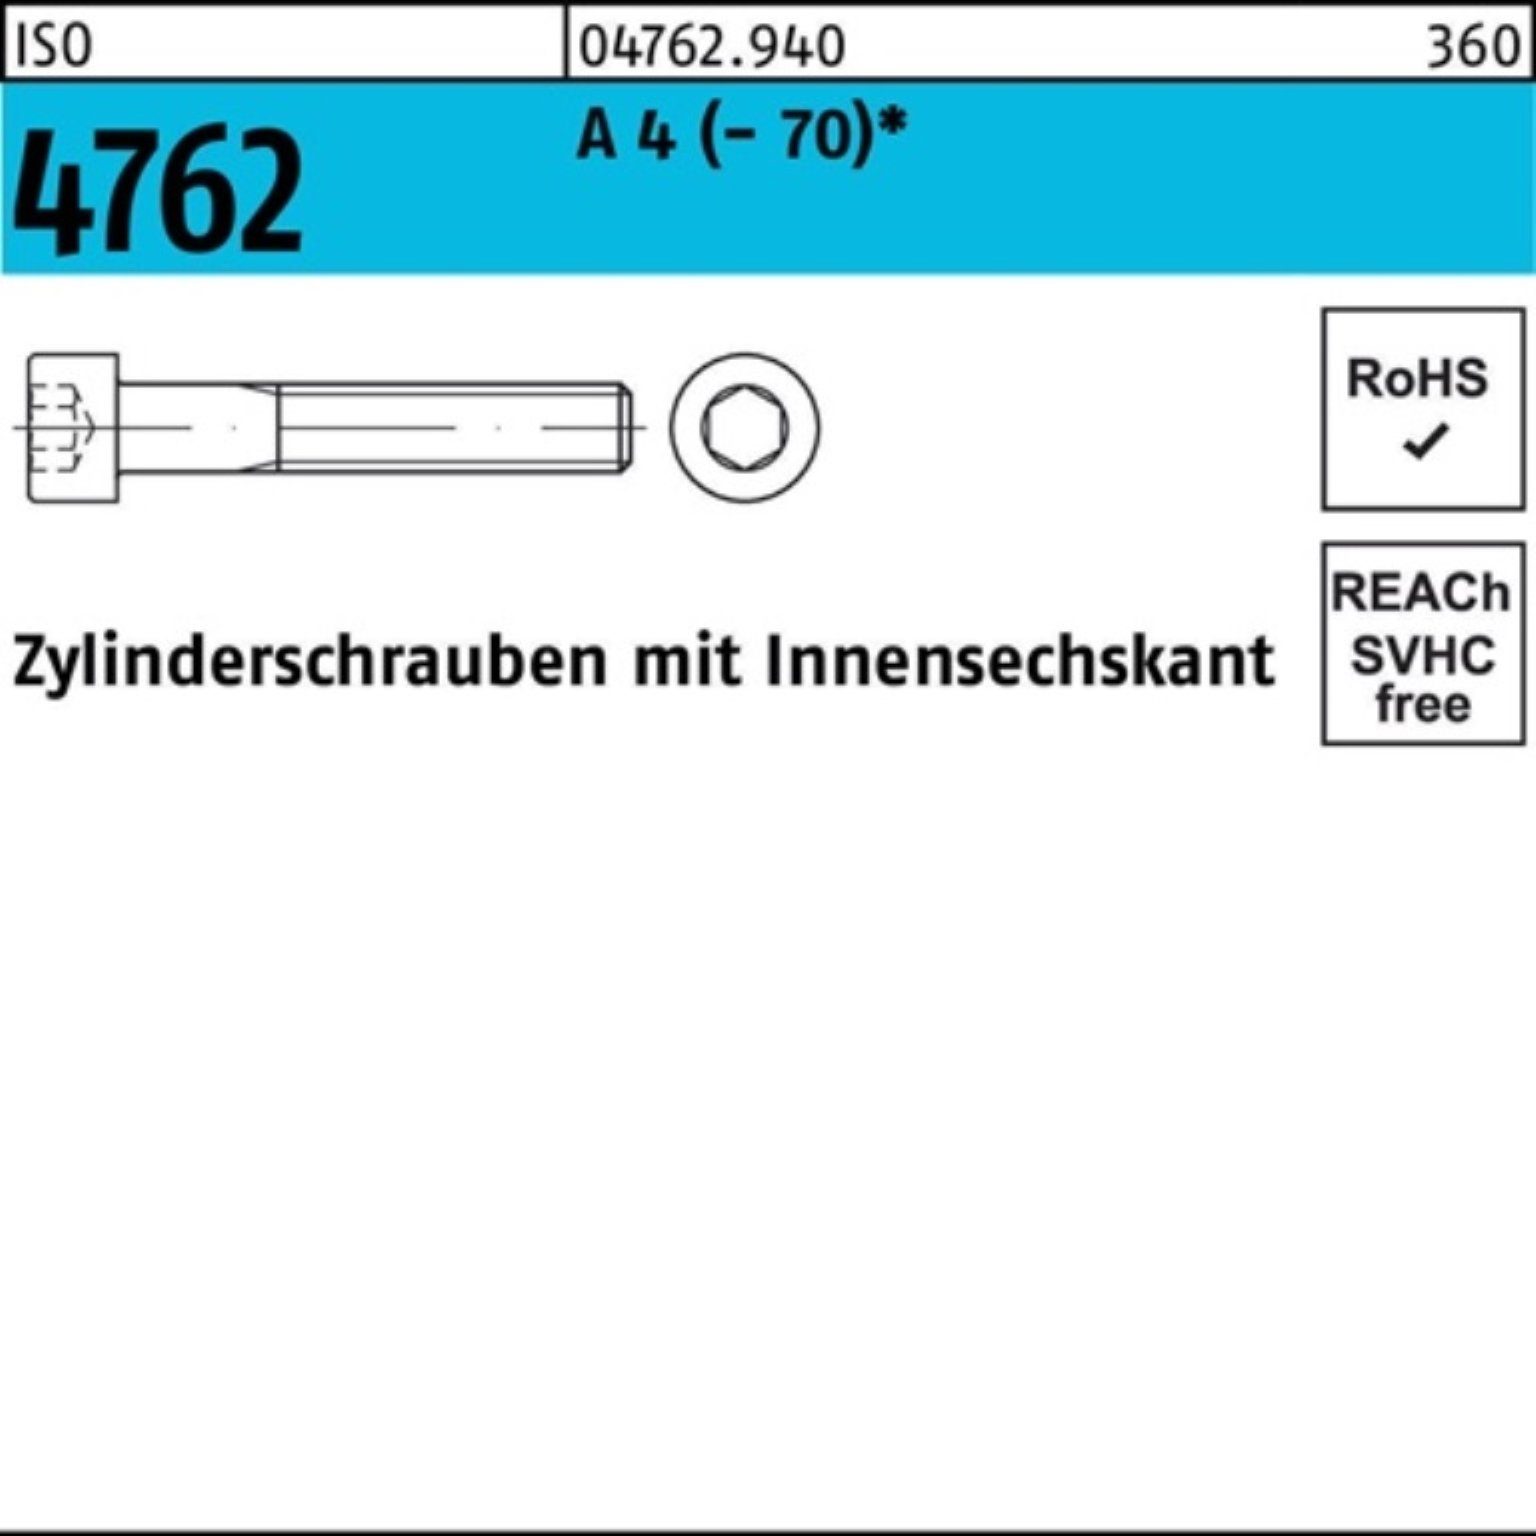 ISO S M6x Zylinderschraube Innen-6kt (70) Zylinderschraube A 4 Reyher Pack 4762 20 100 100er